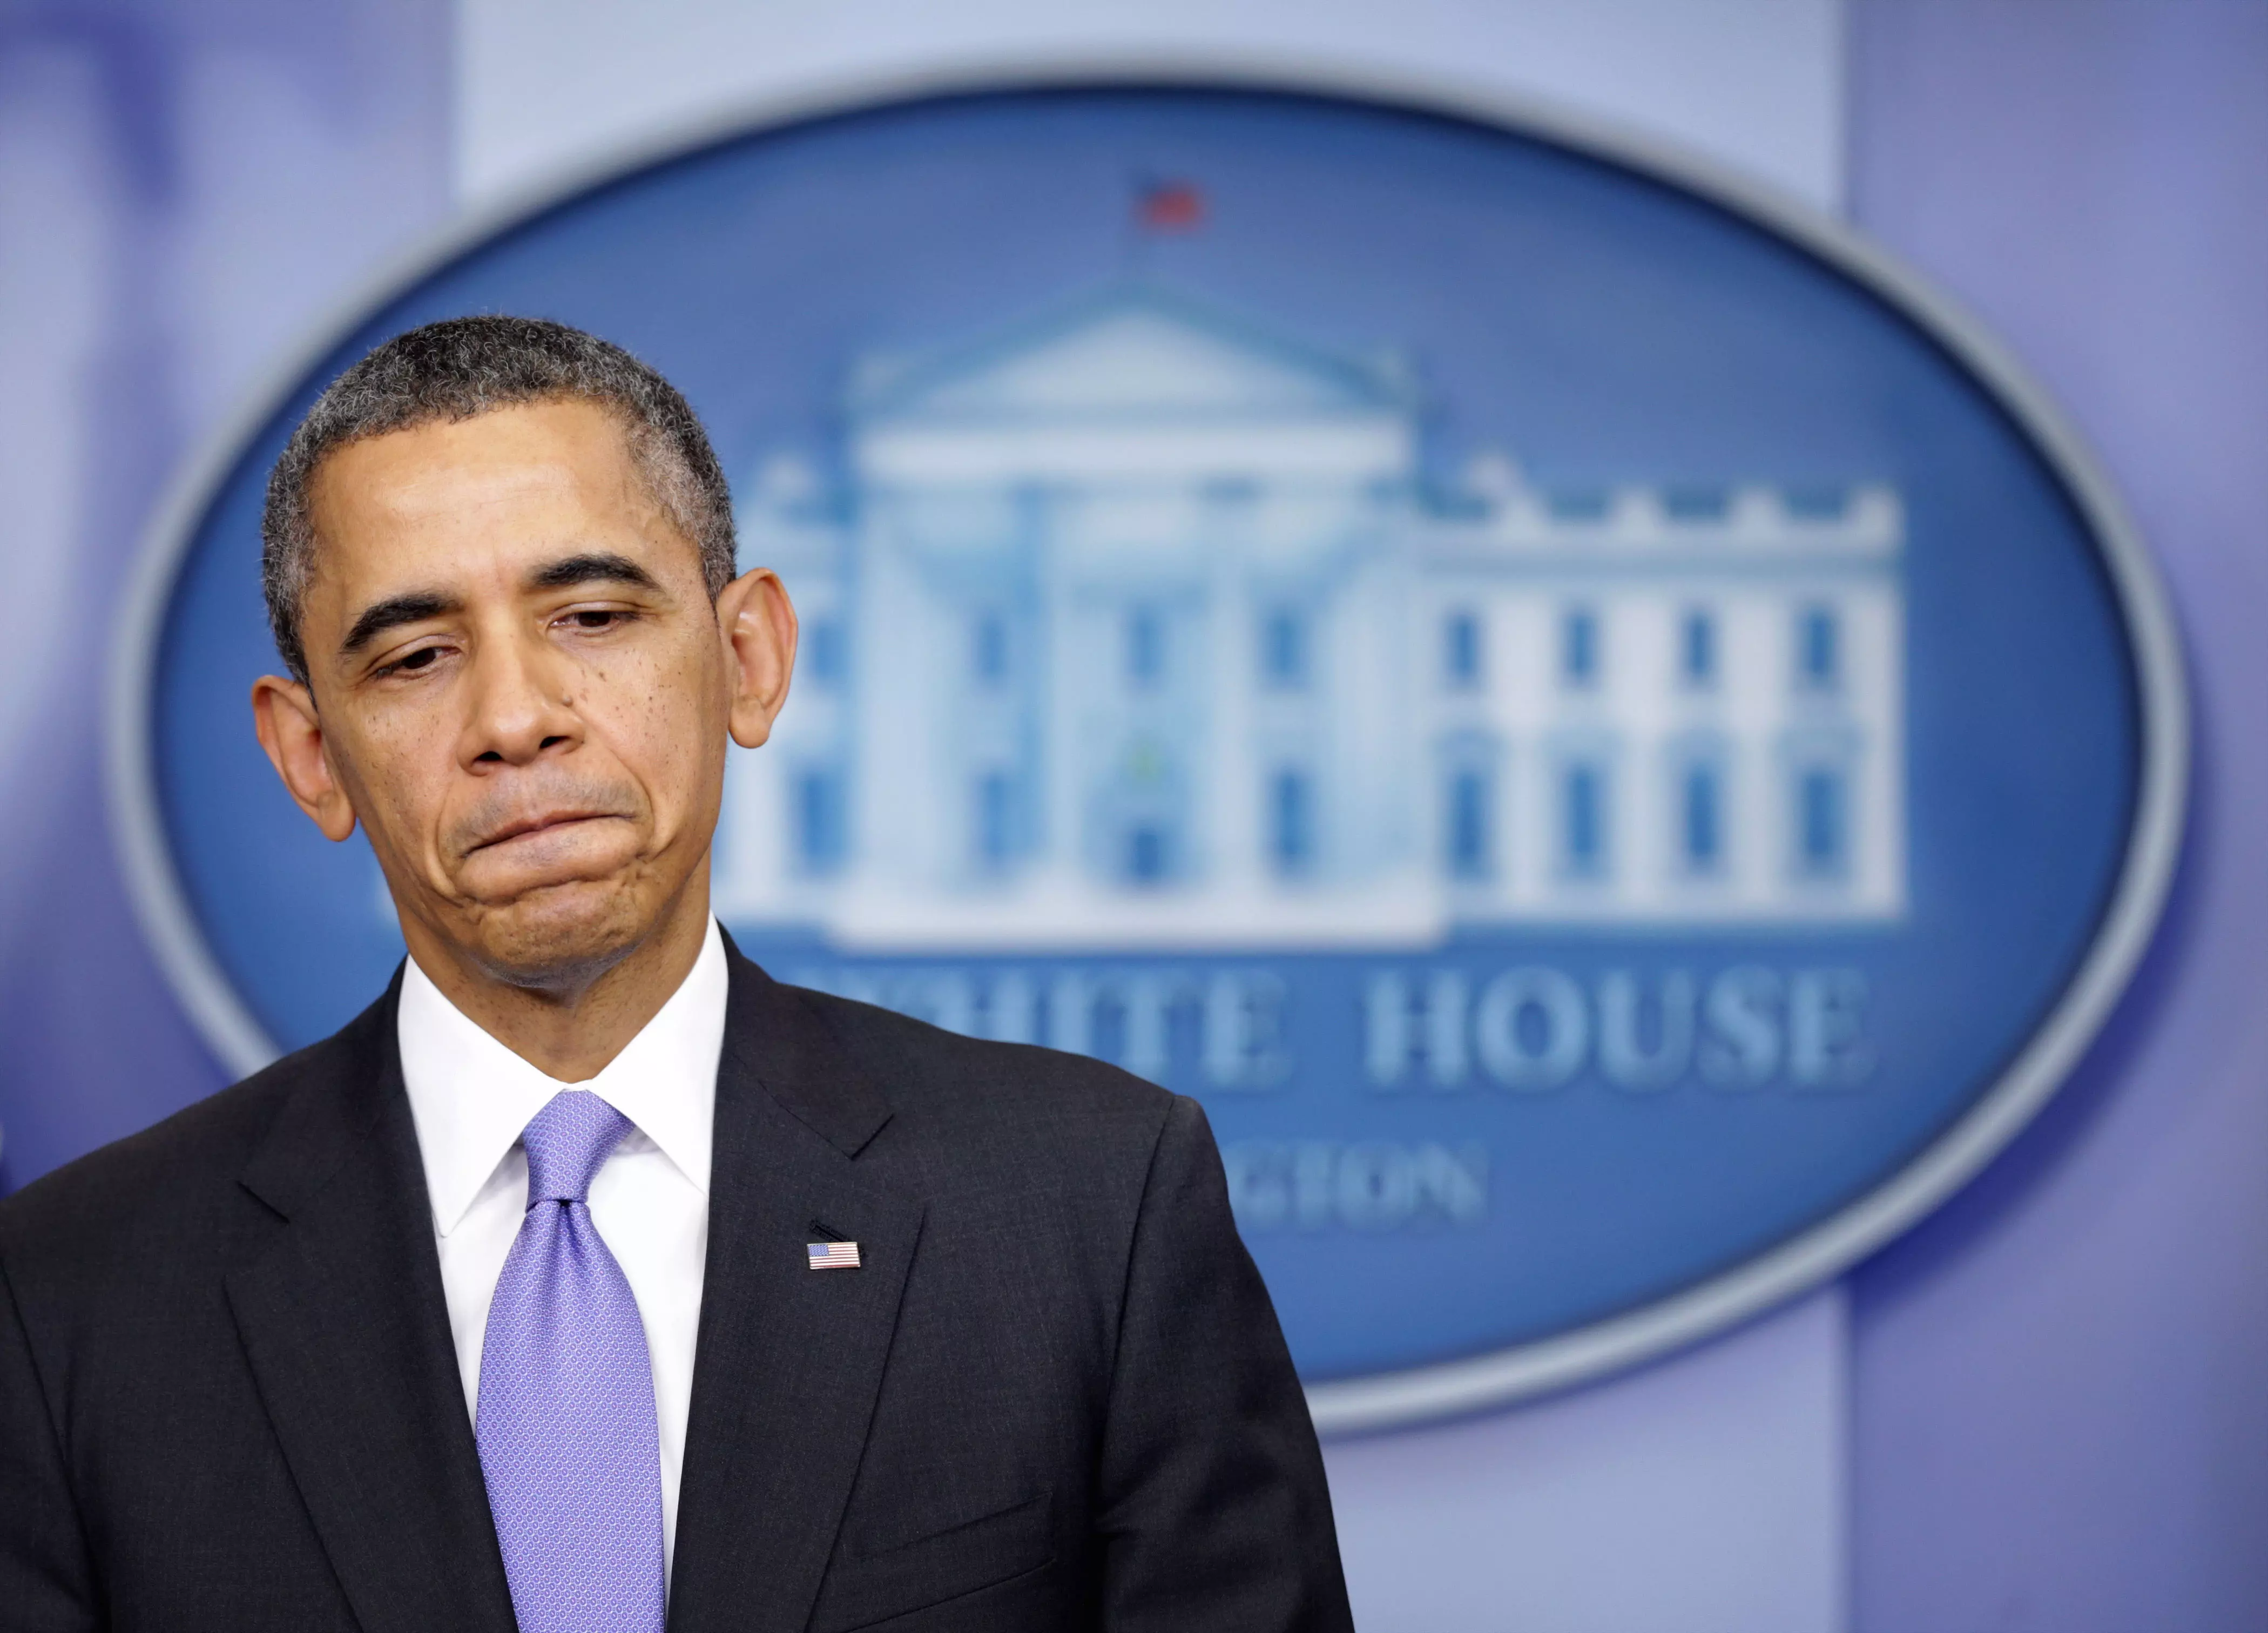 נשיא ארה"ב, ברק אובמה. שומר על הסטטוס קוו בסוריה